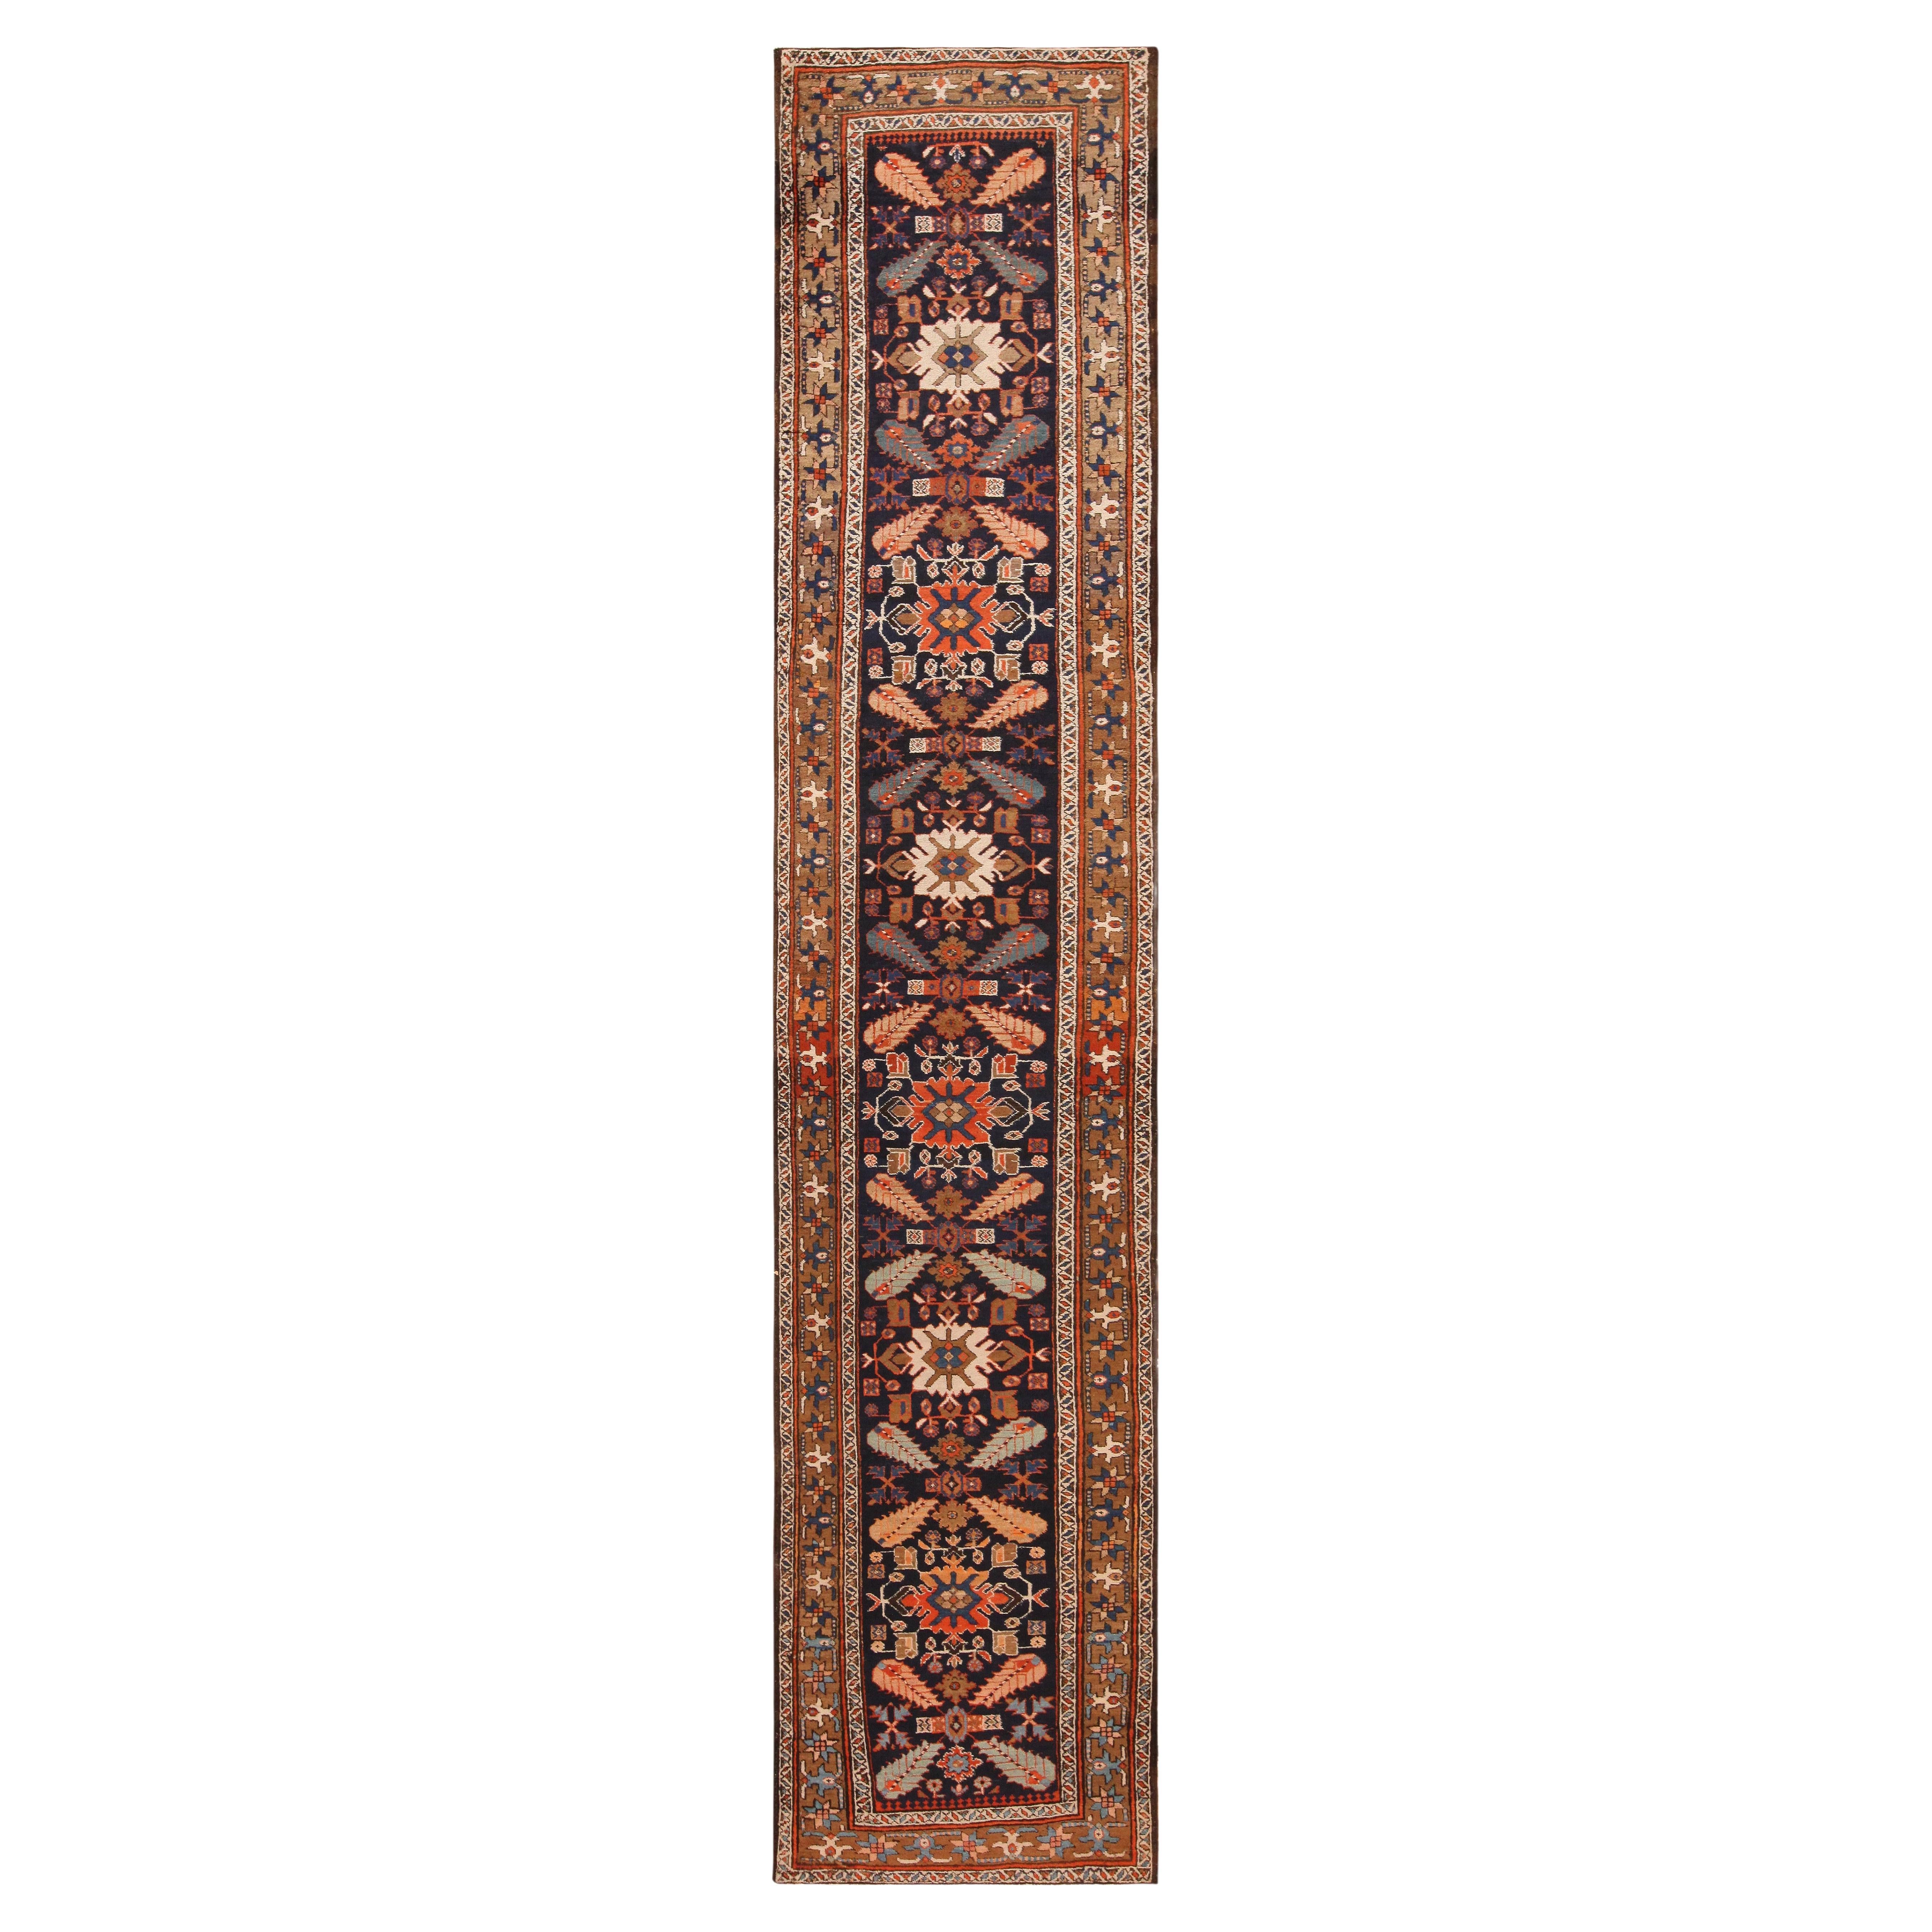 Antique Persian Heriz Runner Rug. 3 ft 1 in x 15 ft 4 in